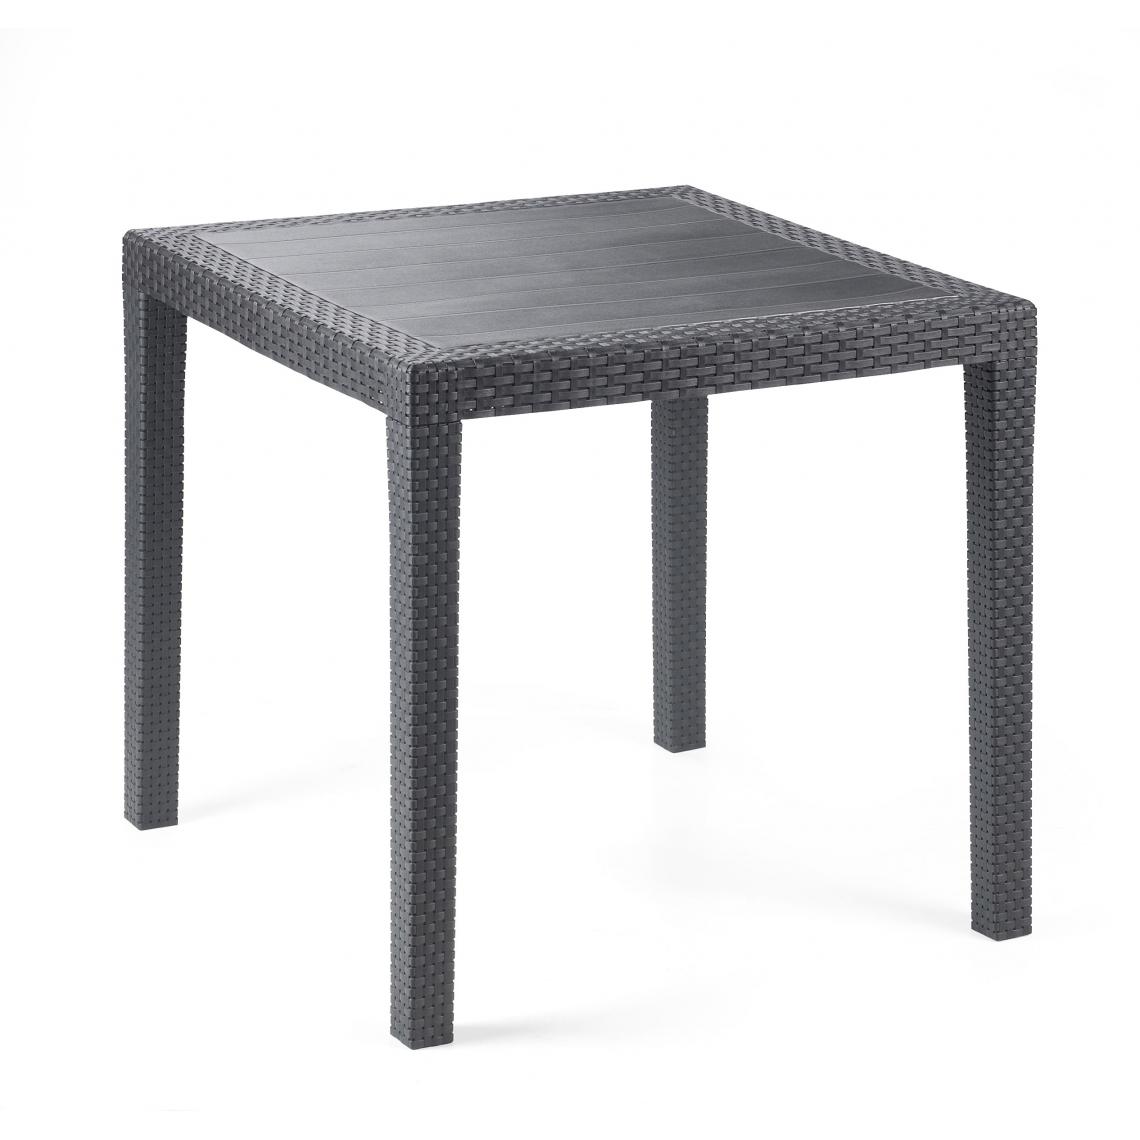 Alter - Table d'extérieur carrée, structure en résine dure effet rotin, Made in Italy, 80 x 80 x 72 cm, couleur Anthracite - Tables à manger